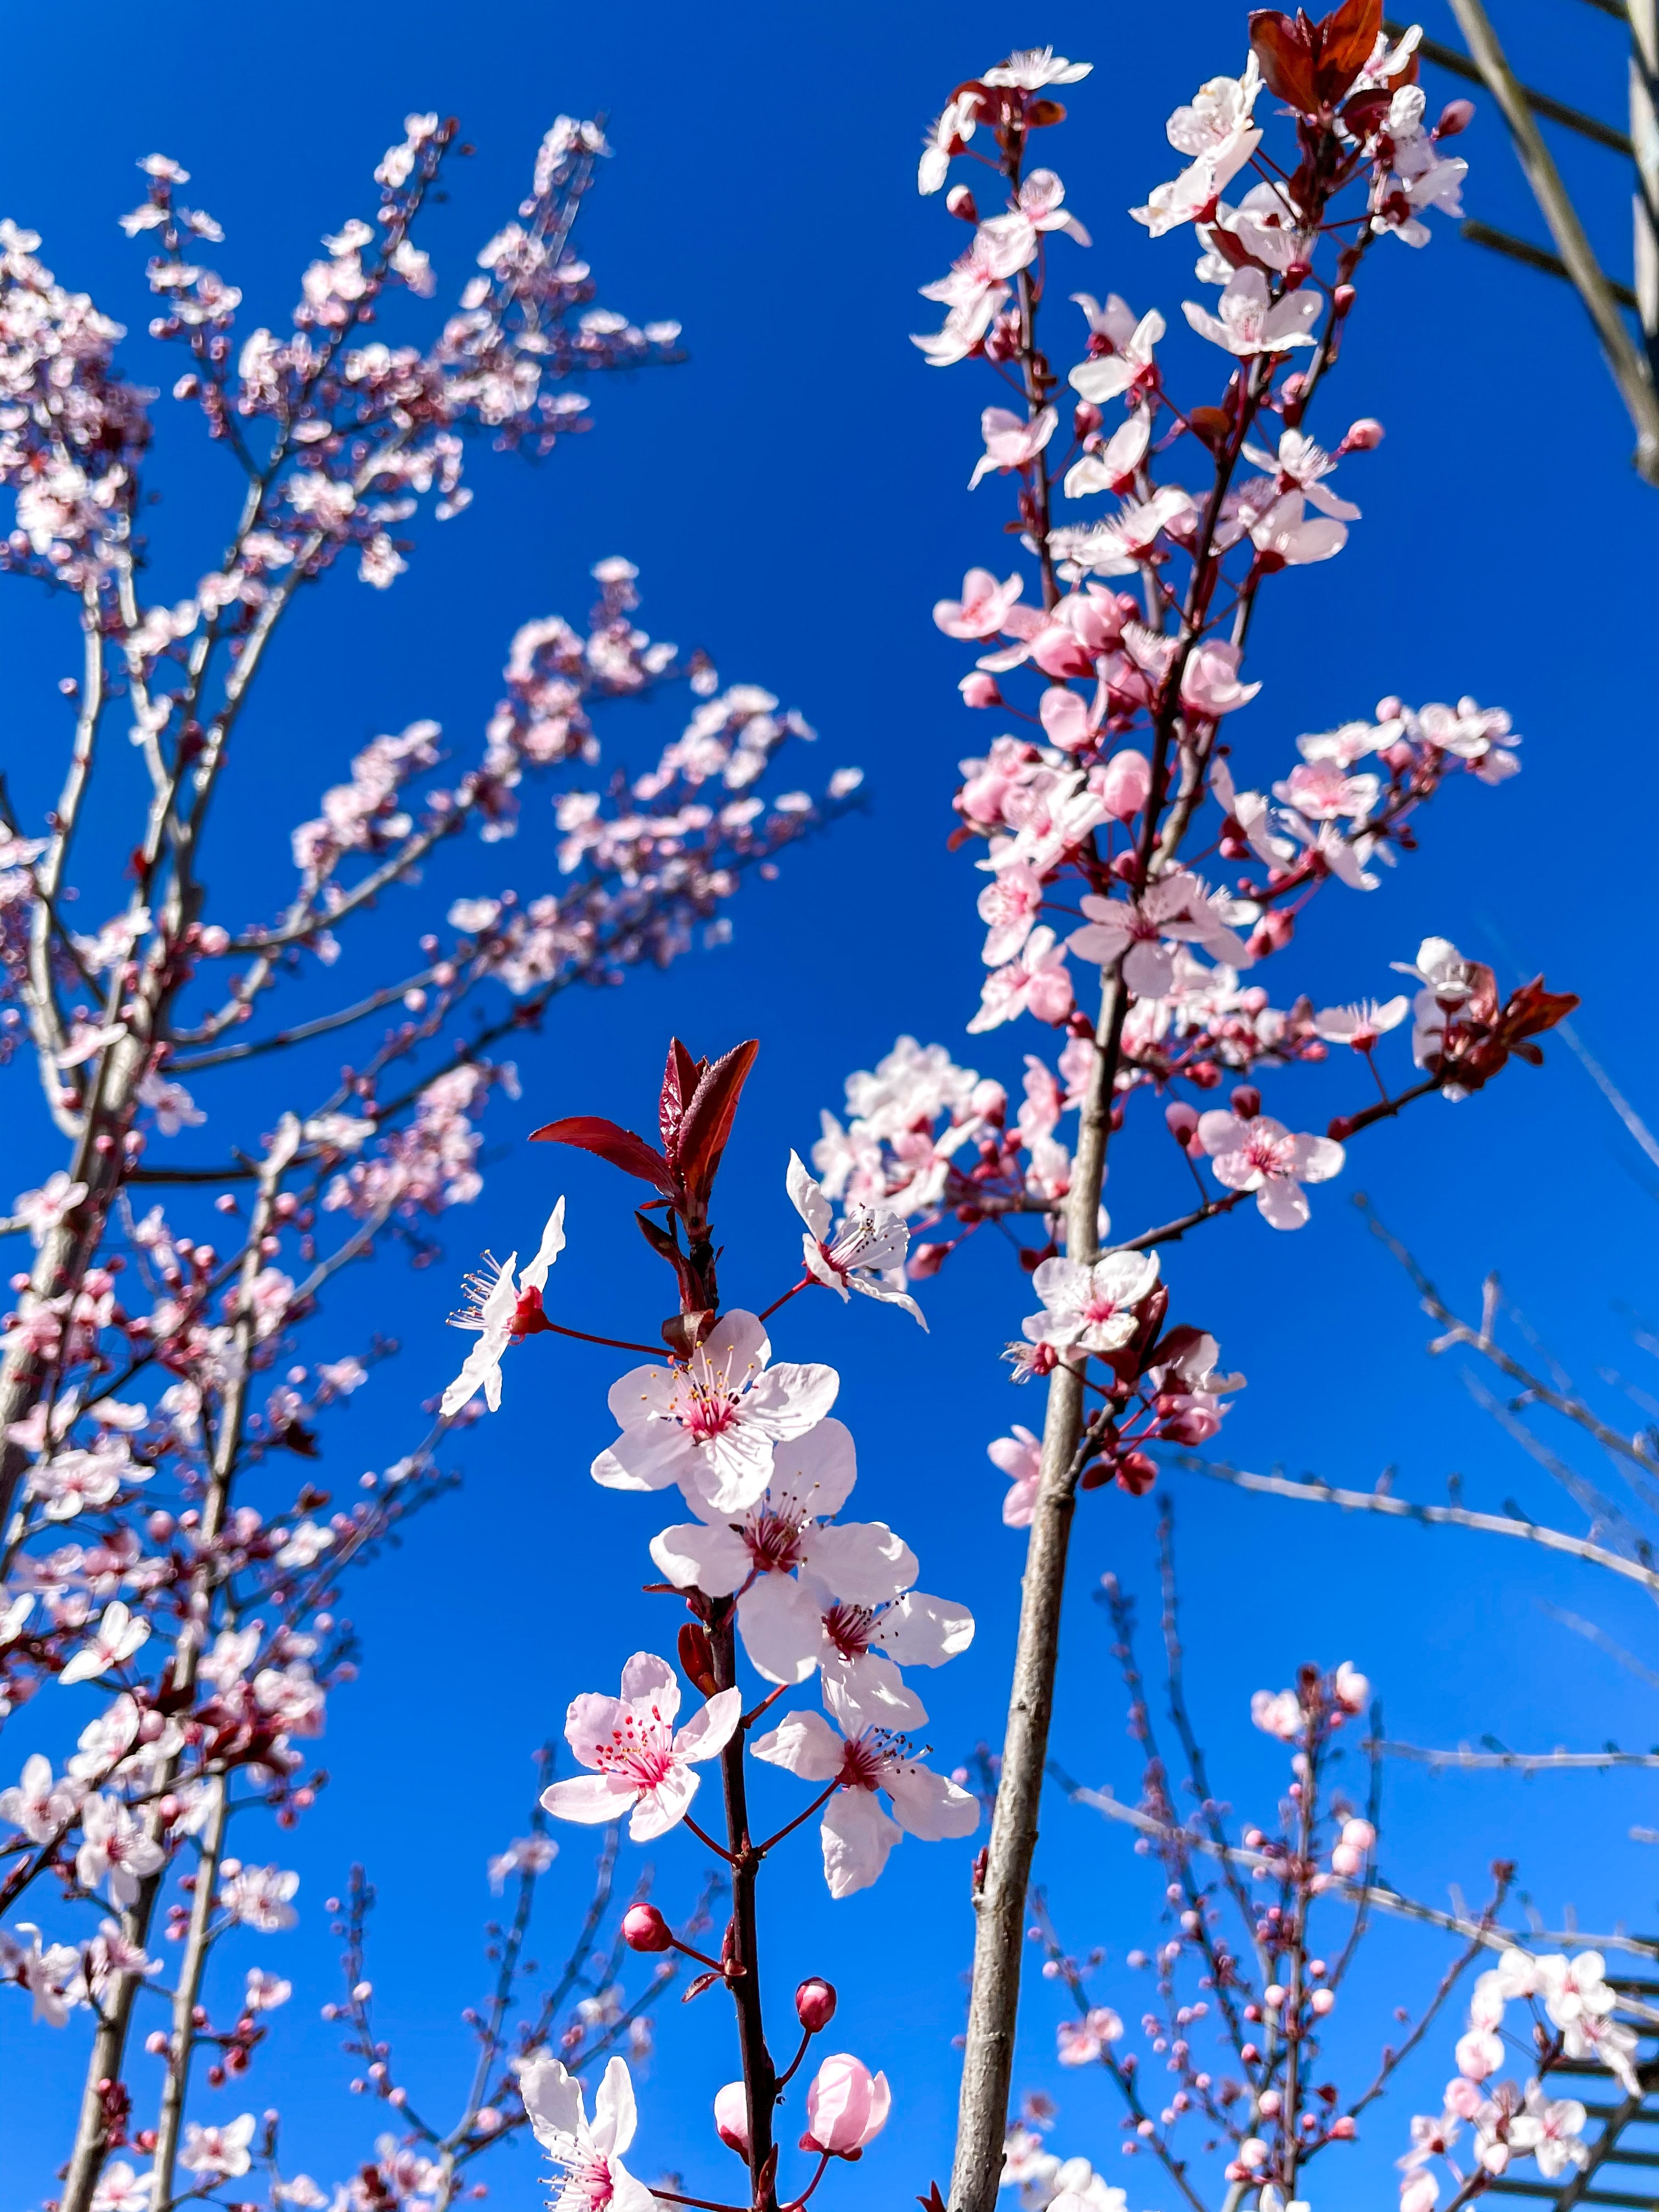 4k Cherry Blossom Photos